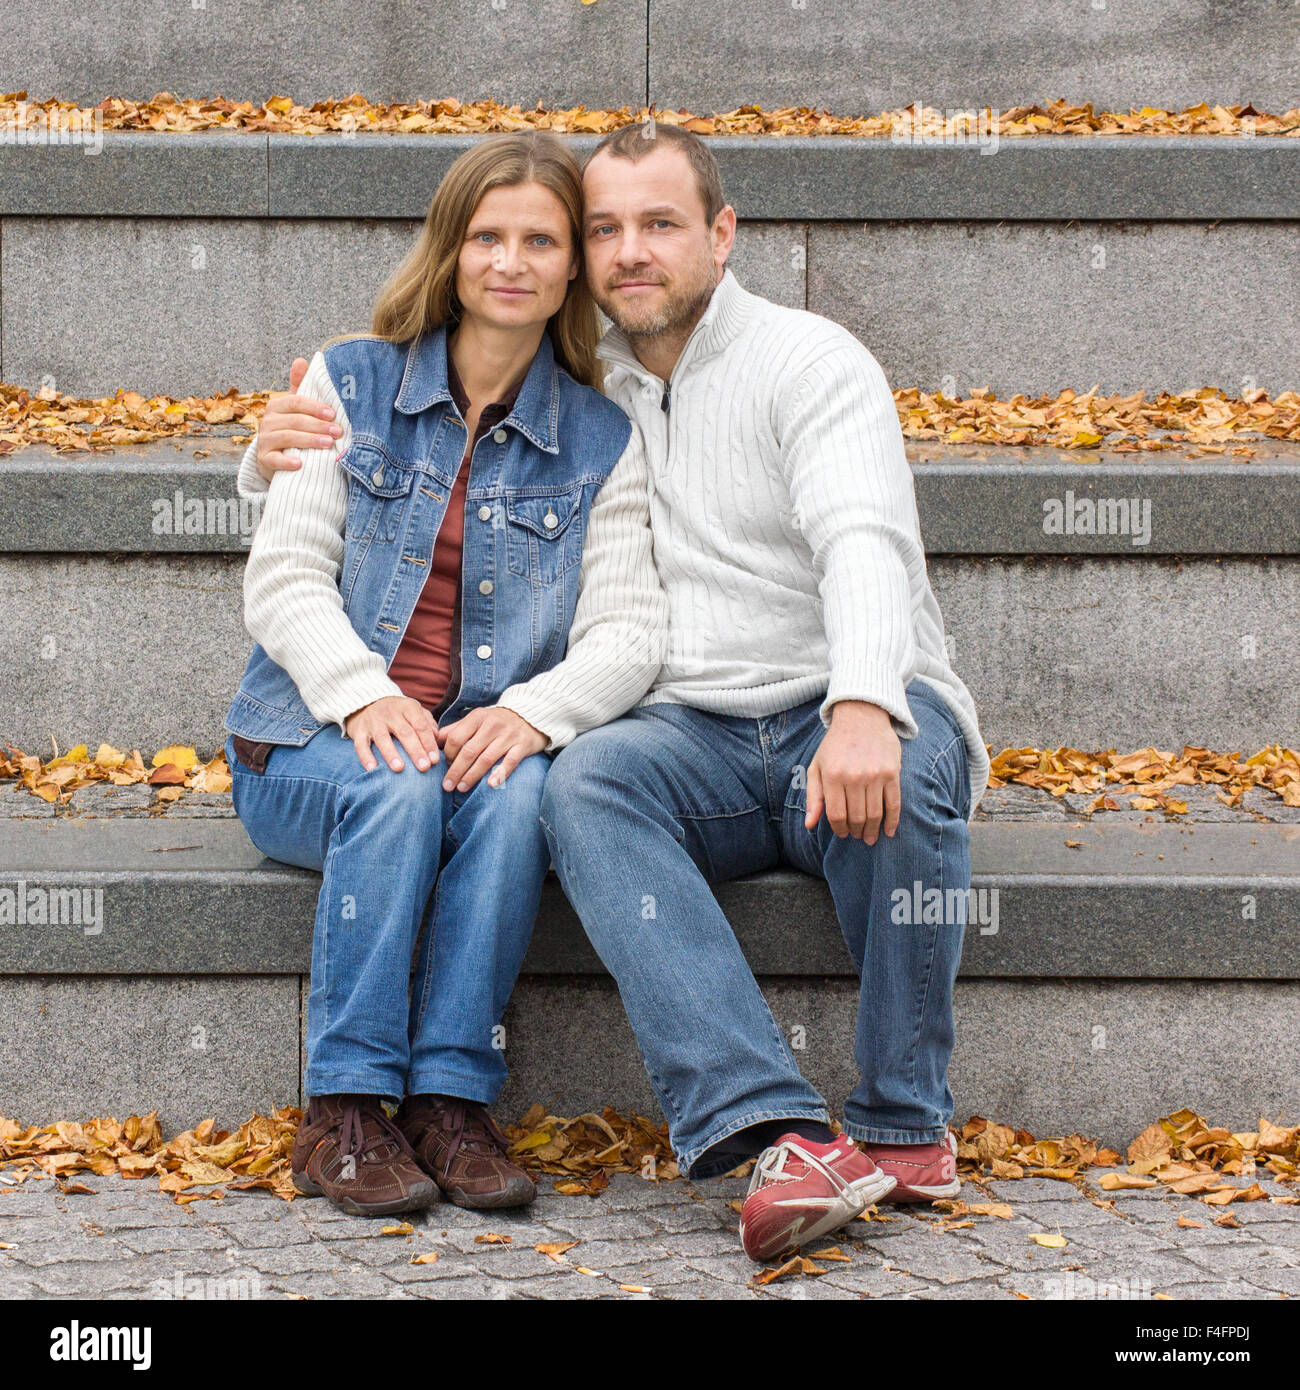 Une femme et un homme aux cheveux longs assis sur l'escalier en pierre grise avec des feuilles d'automne jaune Banque D'Images